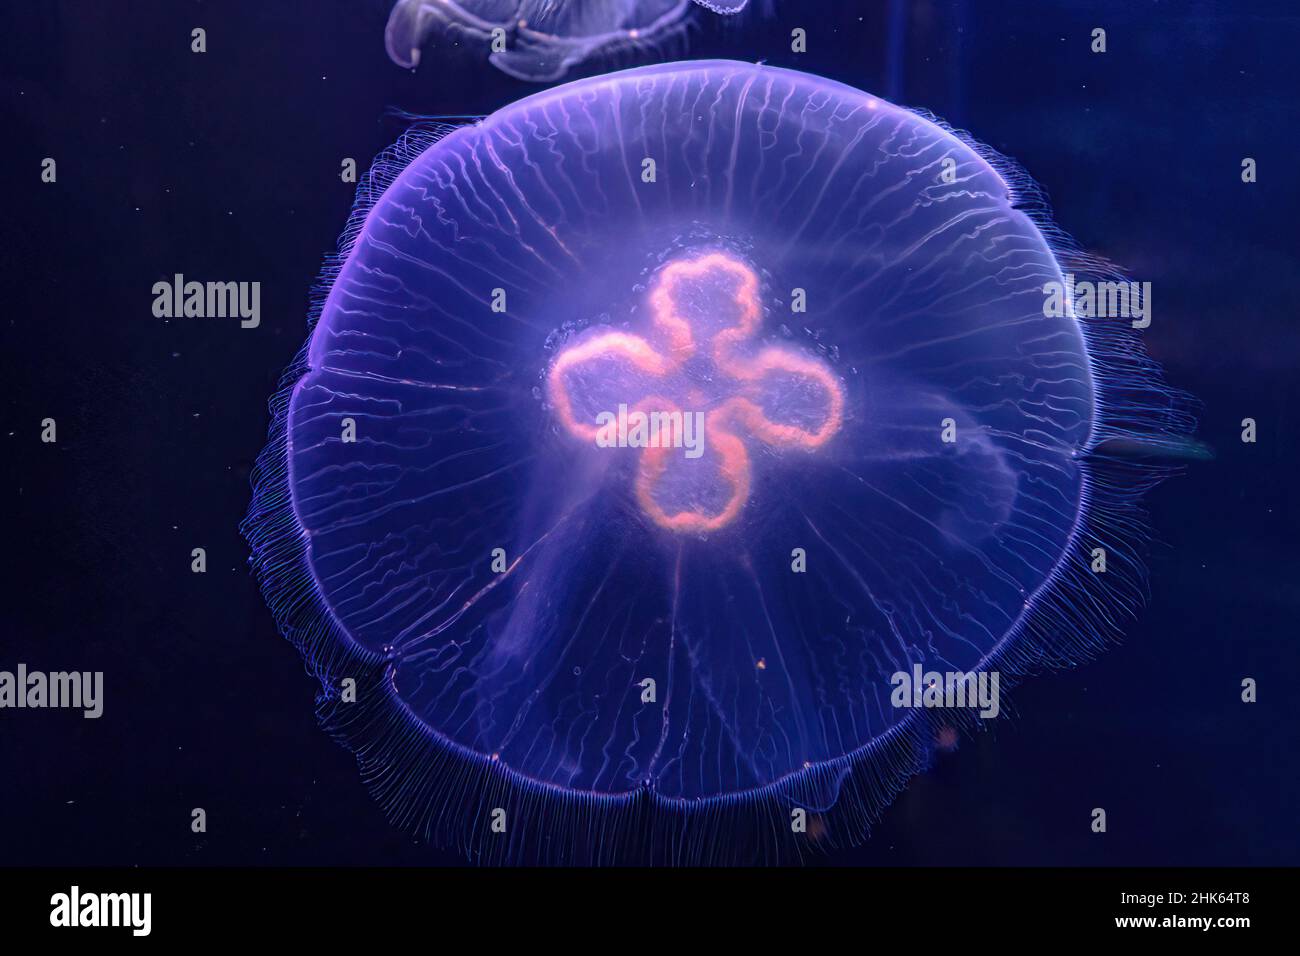 Hintergrund der Mondquallen des Aquariums, die im Wasser schwimmen. Aurelia aurita Arten, die in tropischen Gewässern des Indischen, Pazifischen und Atlantischen Ozeans leben Stockfoto